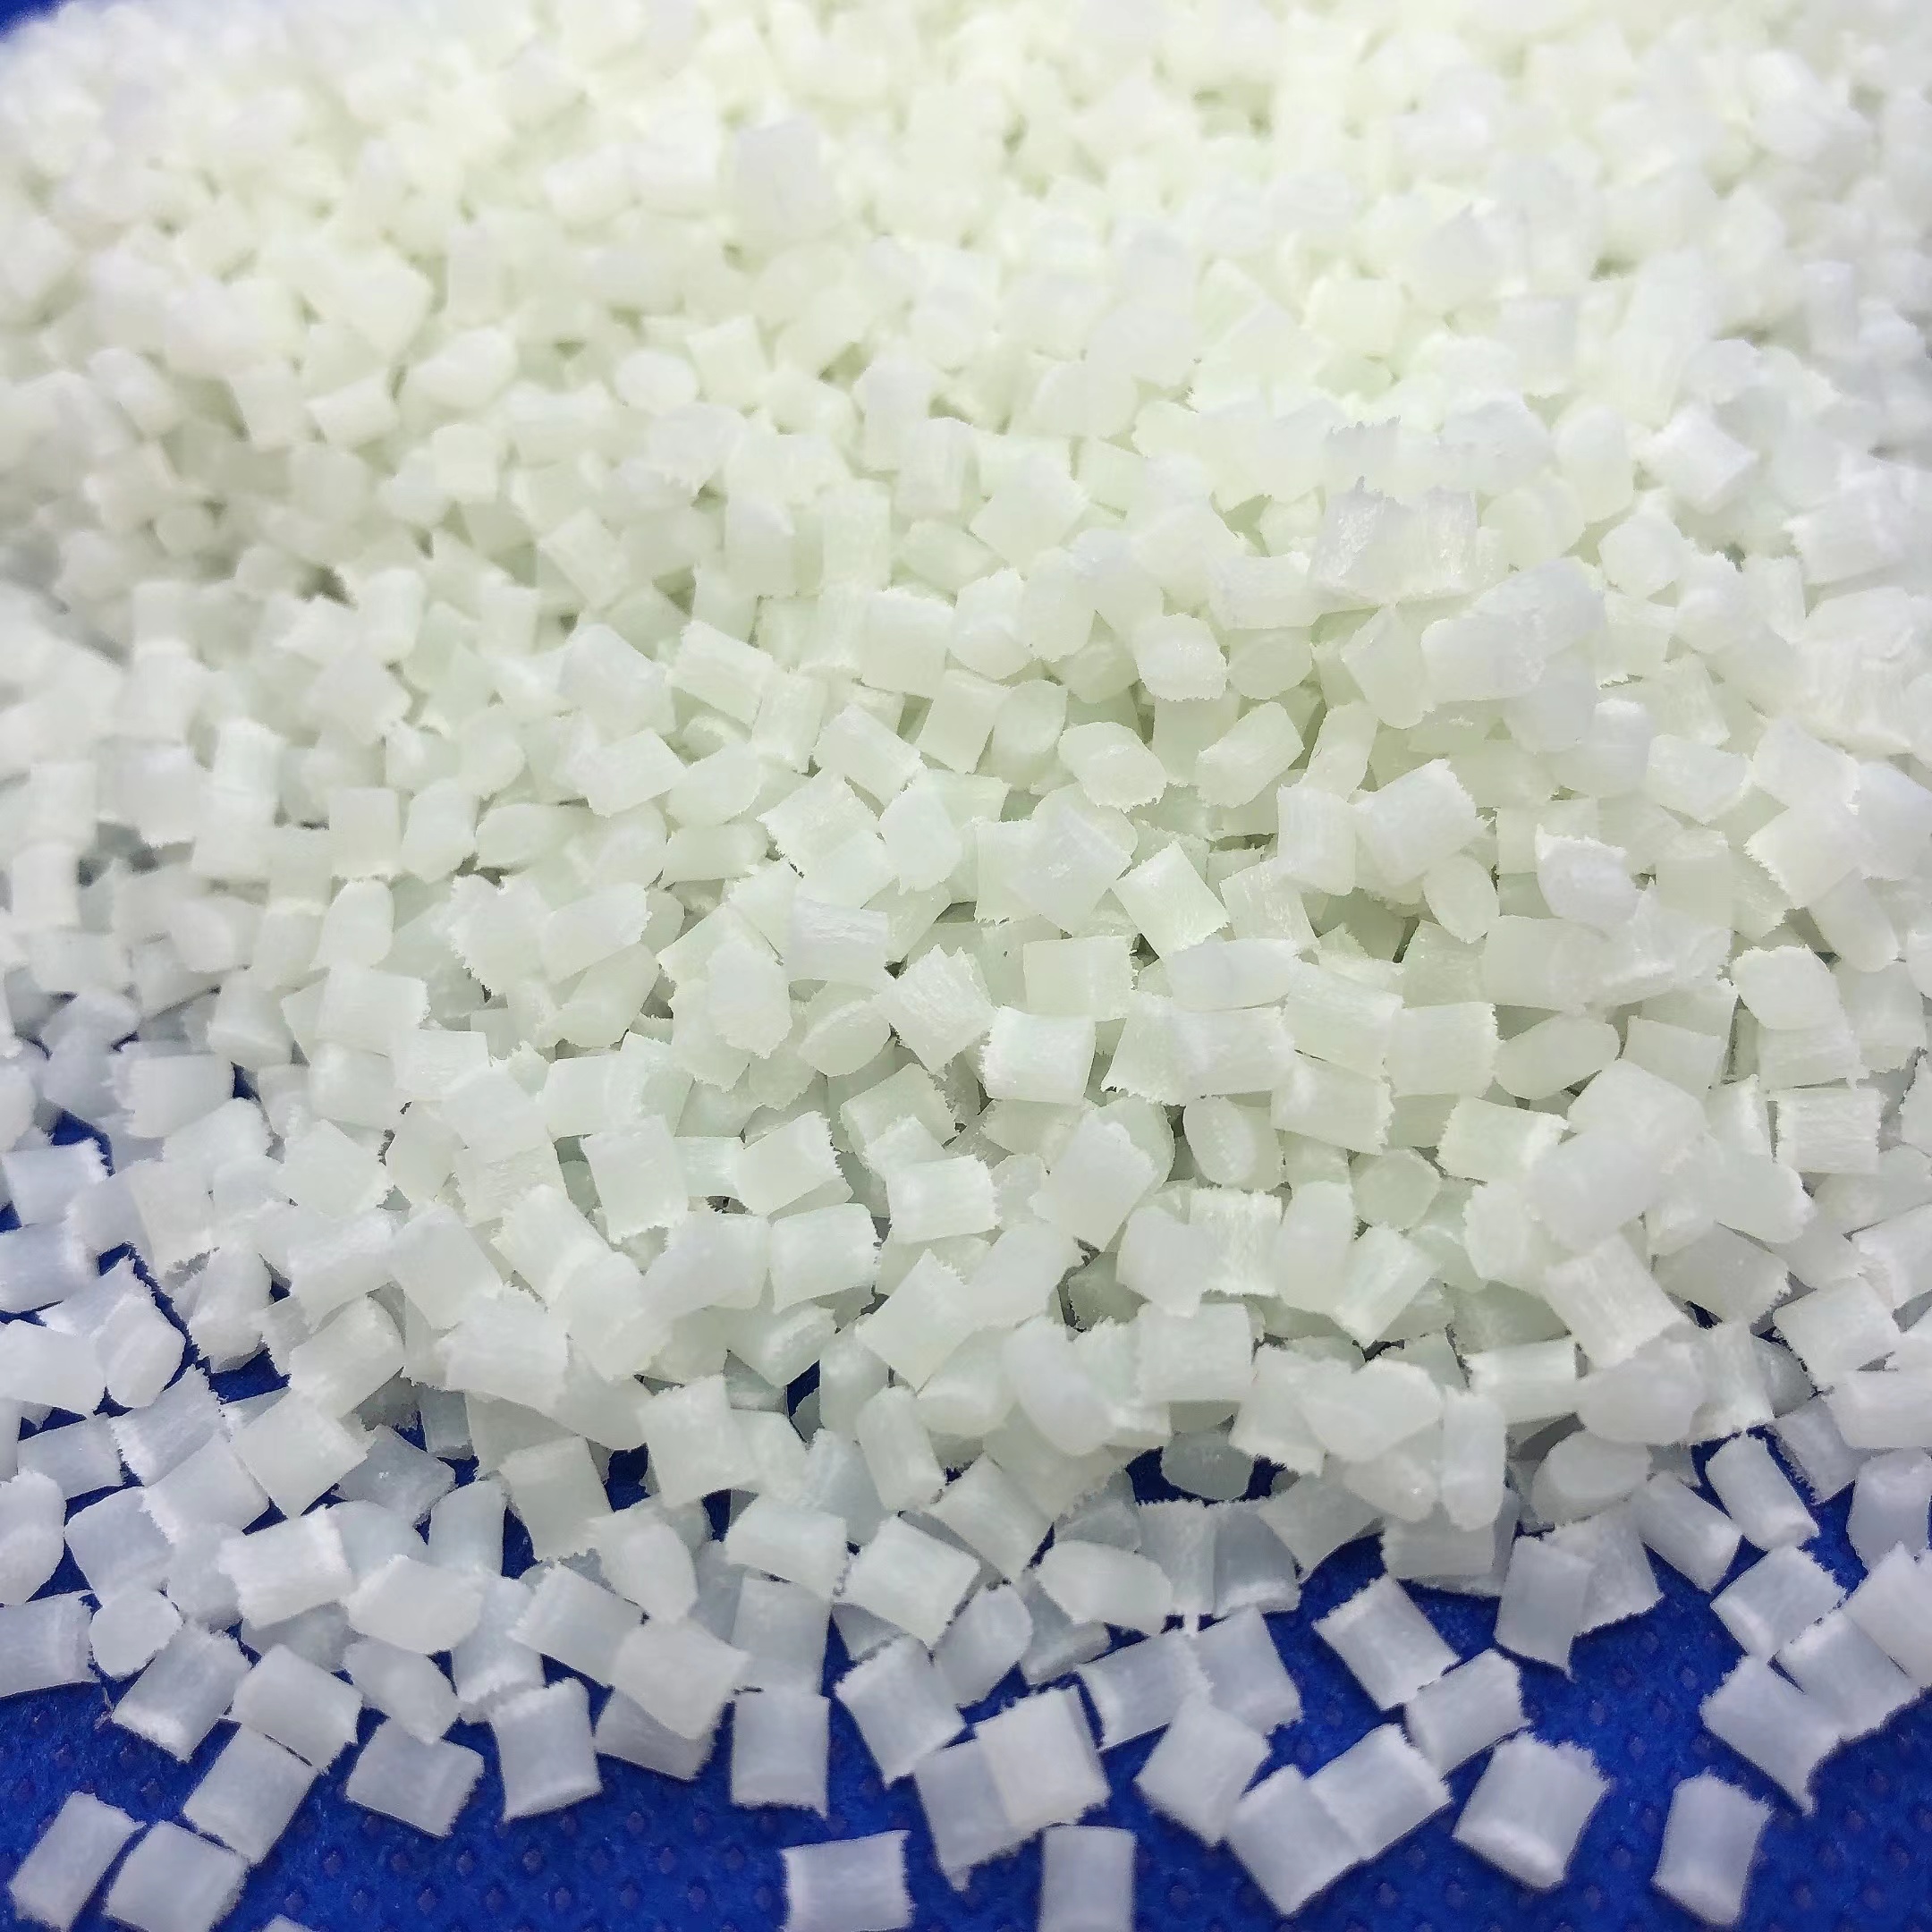 注塑过程中添加剂对改性尼龙改性塑料尼龙材料的影响